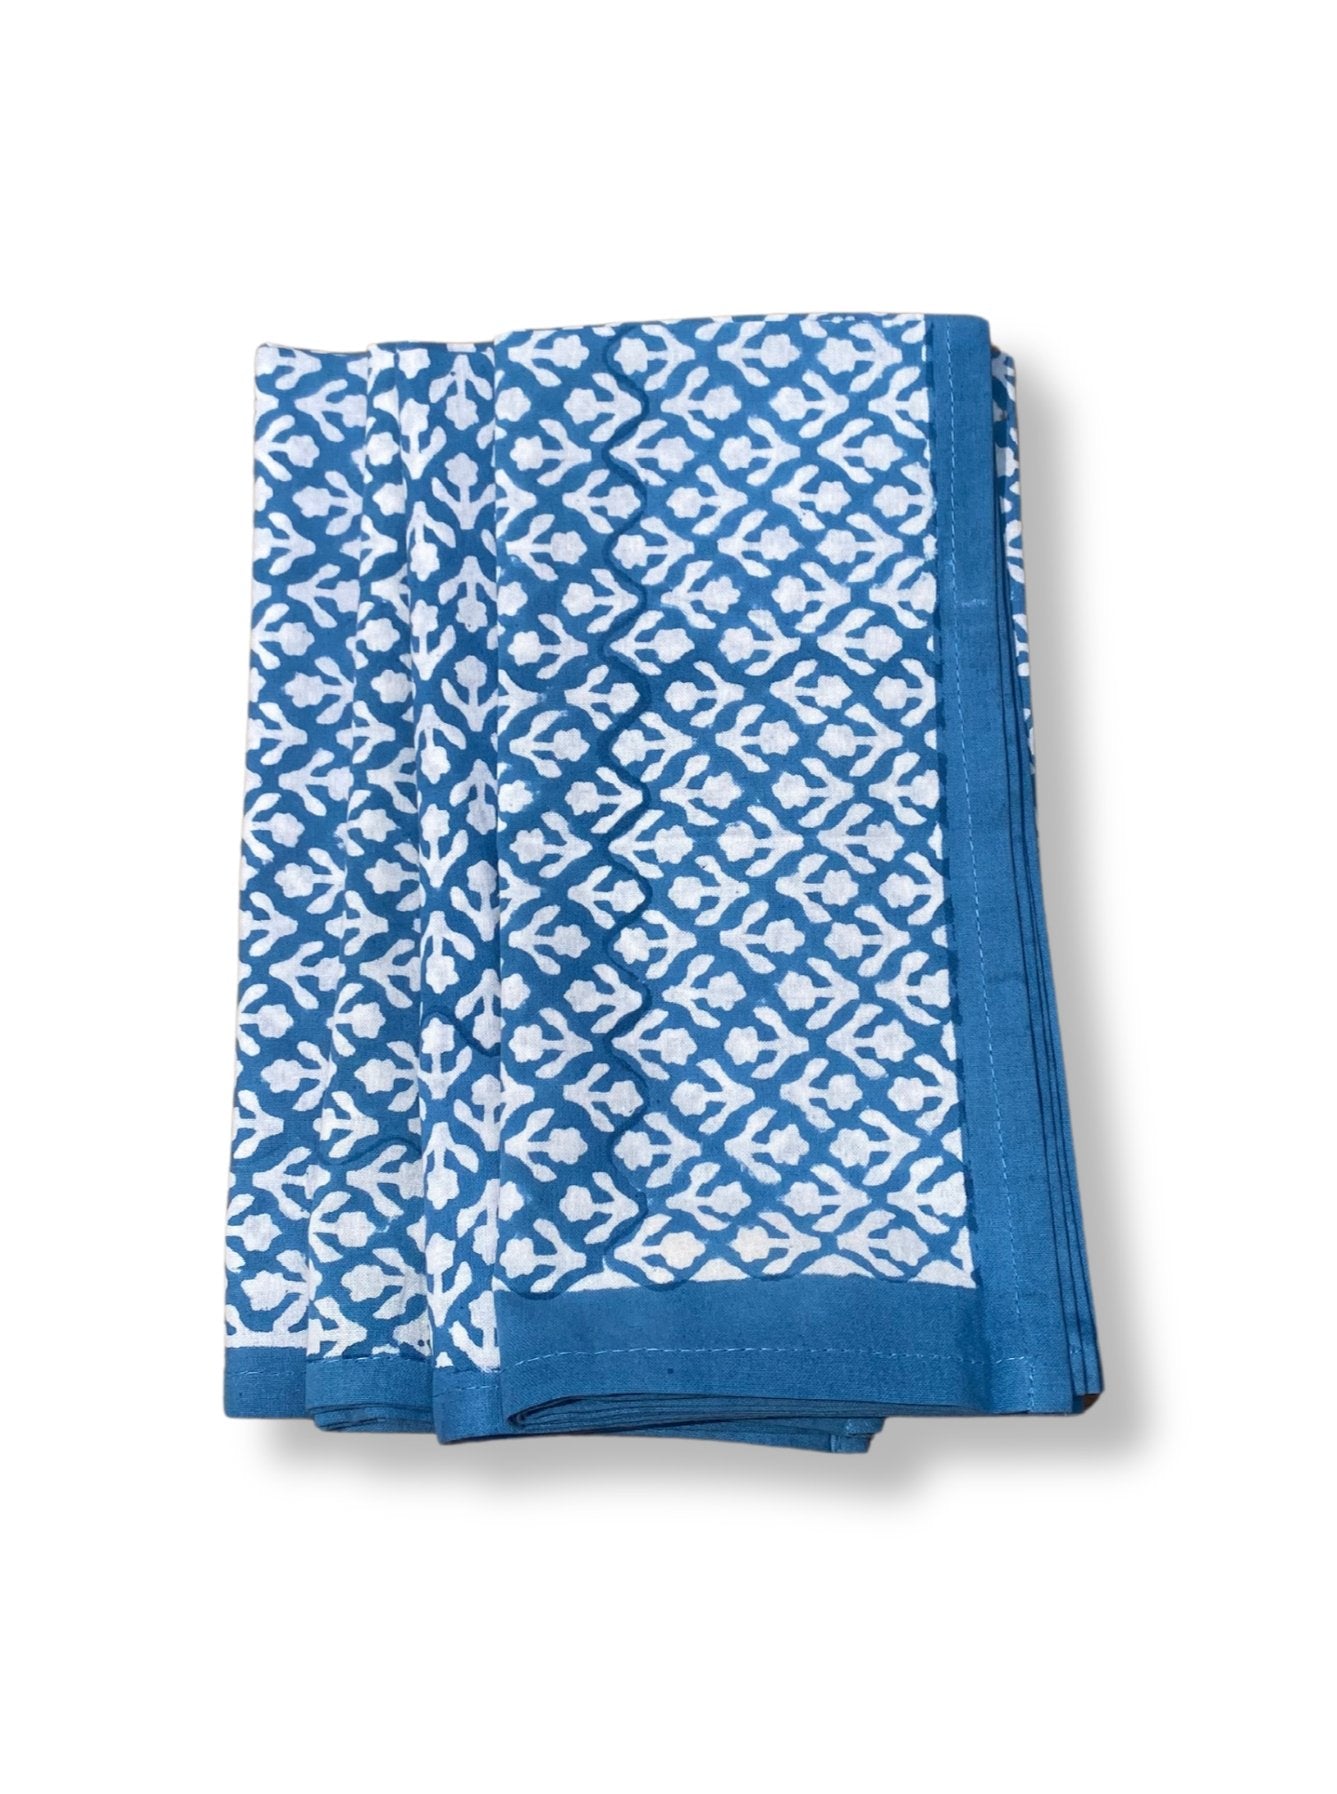 Block Print Cotton Napkins | Blue - Imli.lifestyle